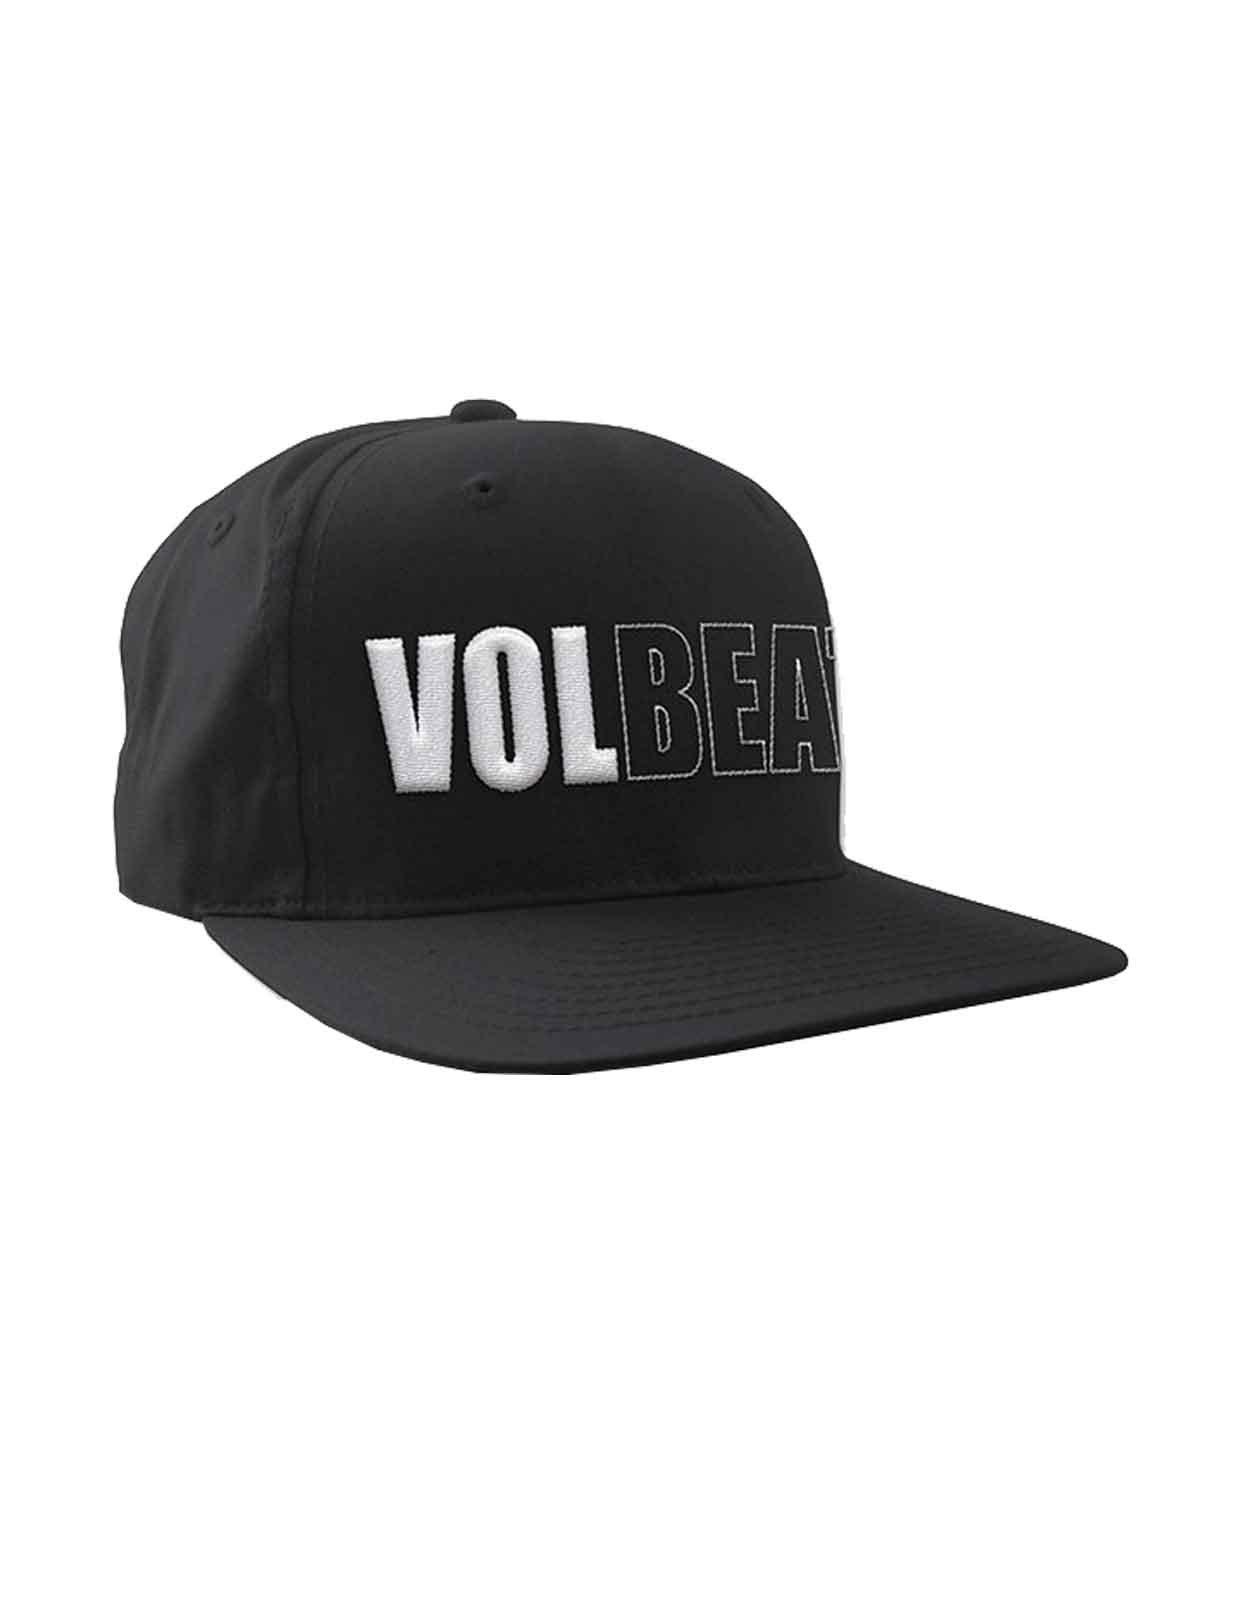 Бейсбольная кепка Snapback с объемным логотипом Band Volbeat, черный бейсбольная кепка snapback с логотипом q band queen черный